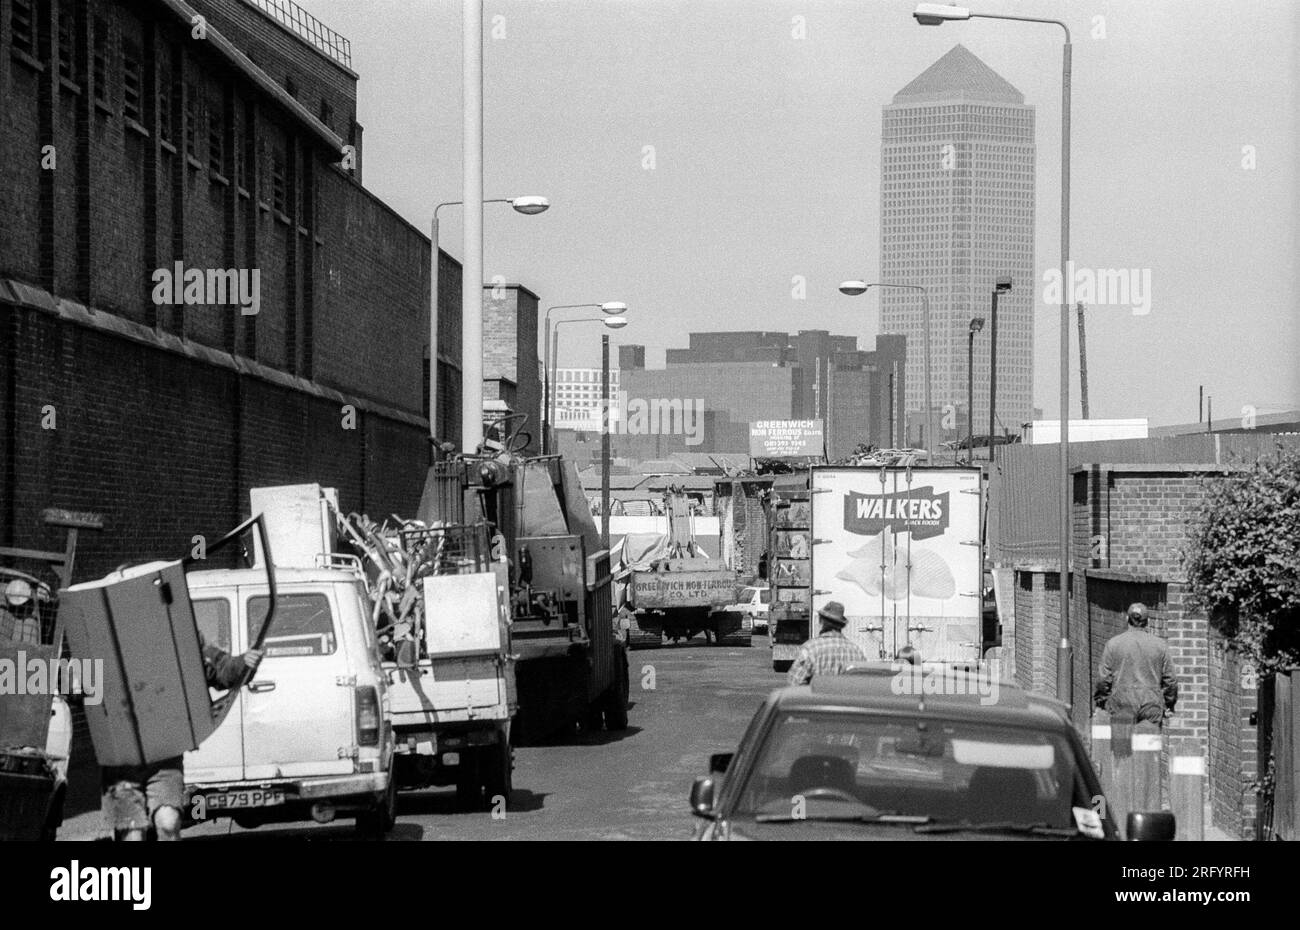 Photographie d'archives en noir et blanc des années 1990 de Canary Wharf vue de Hoskins Street, Greenwich dans le sud de Londres. Banque D'Images